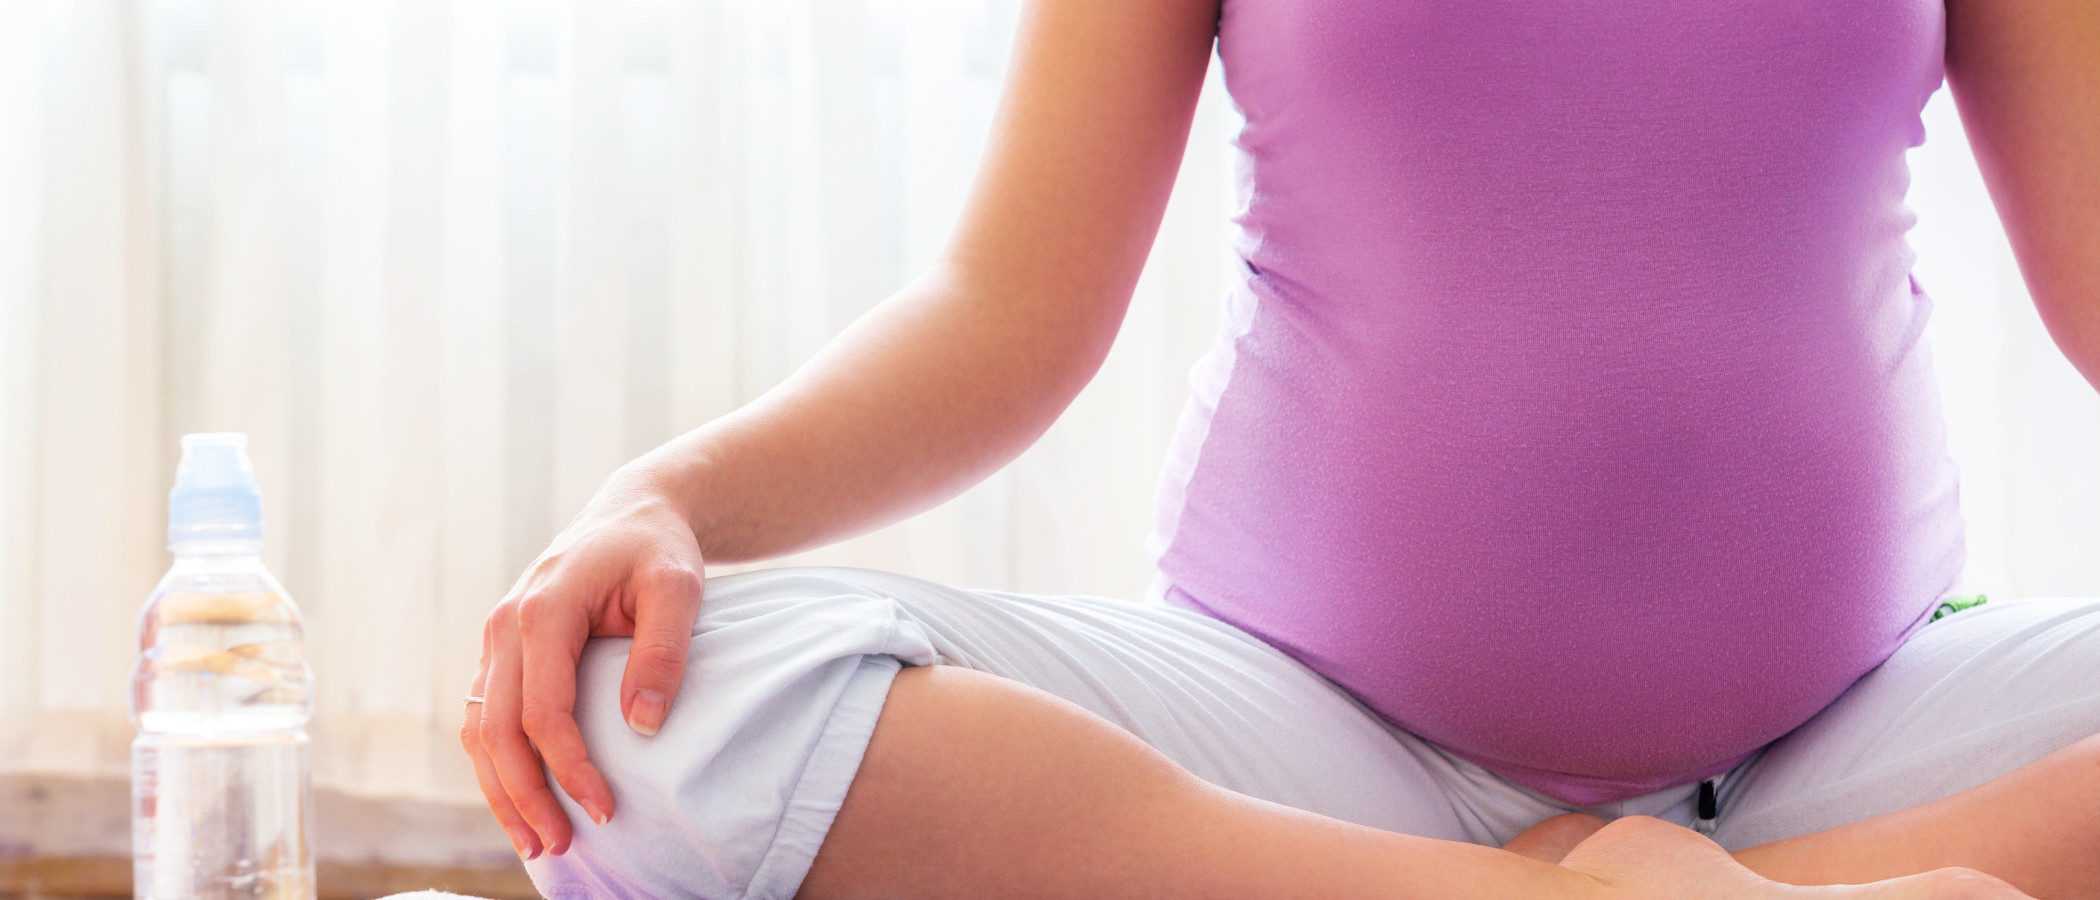 Как развивается плод на 32 неделя беременности Самочувствие мамы возможные осложнения беременности Обследования и УЗИ на 32 неделе Образ жизни и питание